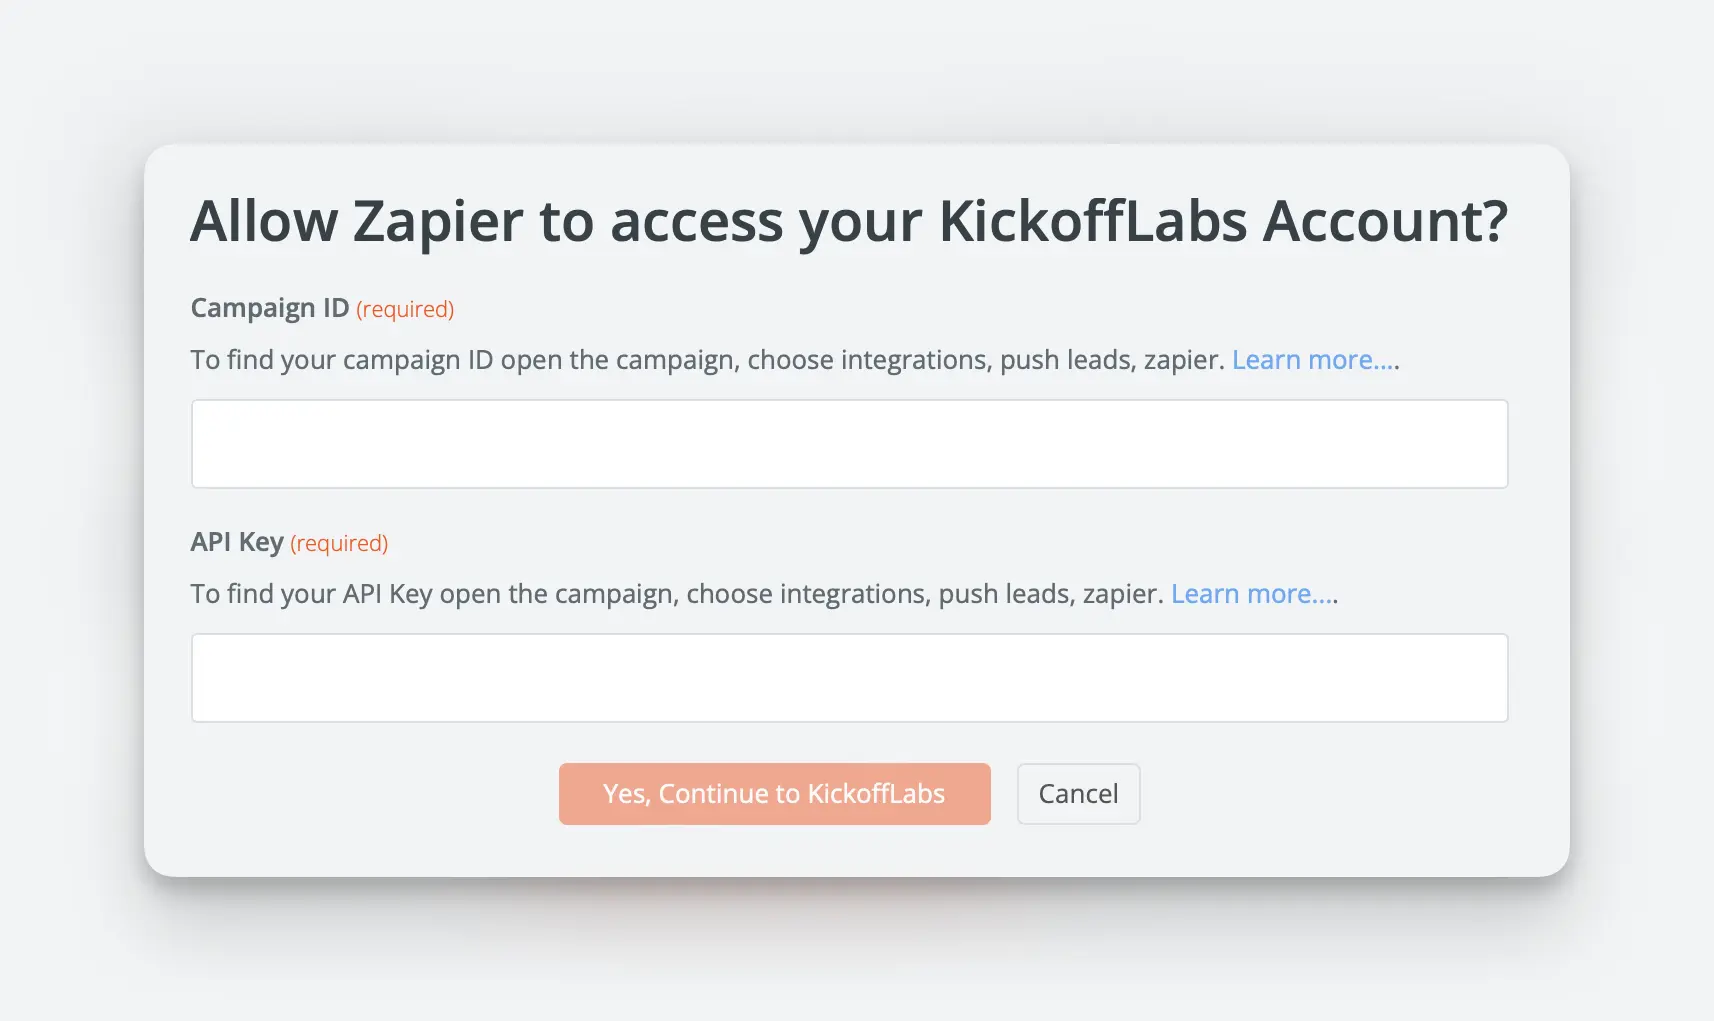 Allow Zapier access